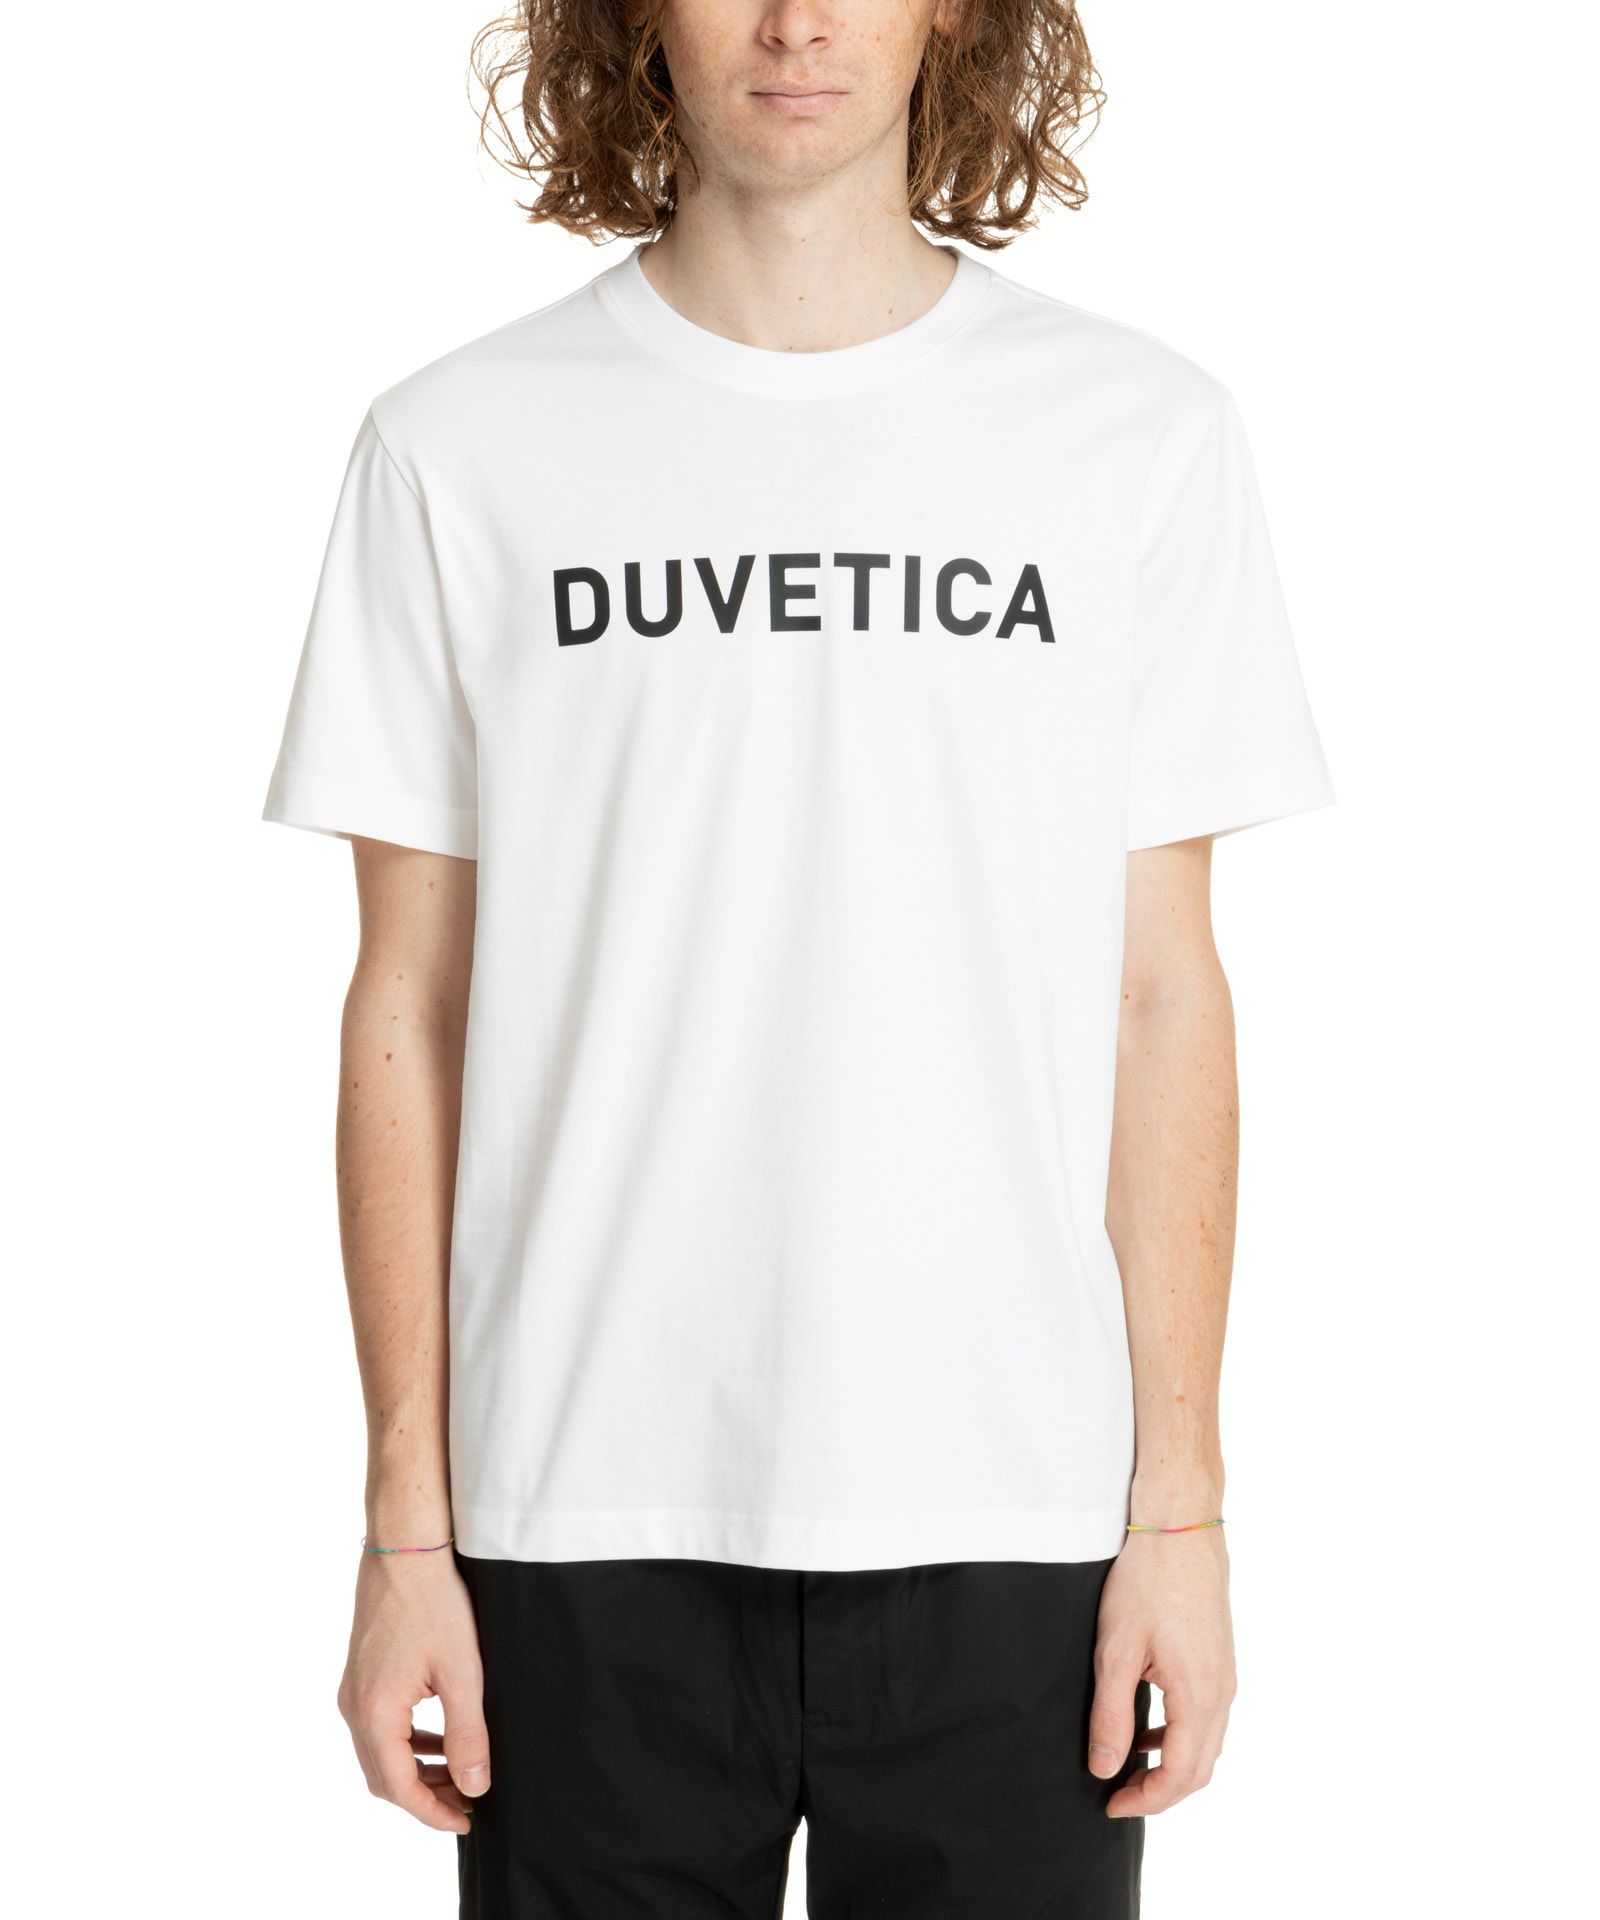 T-shirt - Duvetica - Modalova